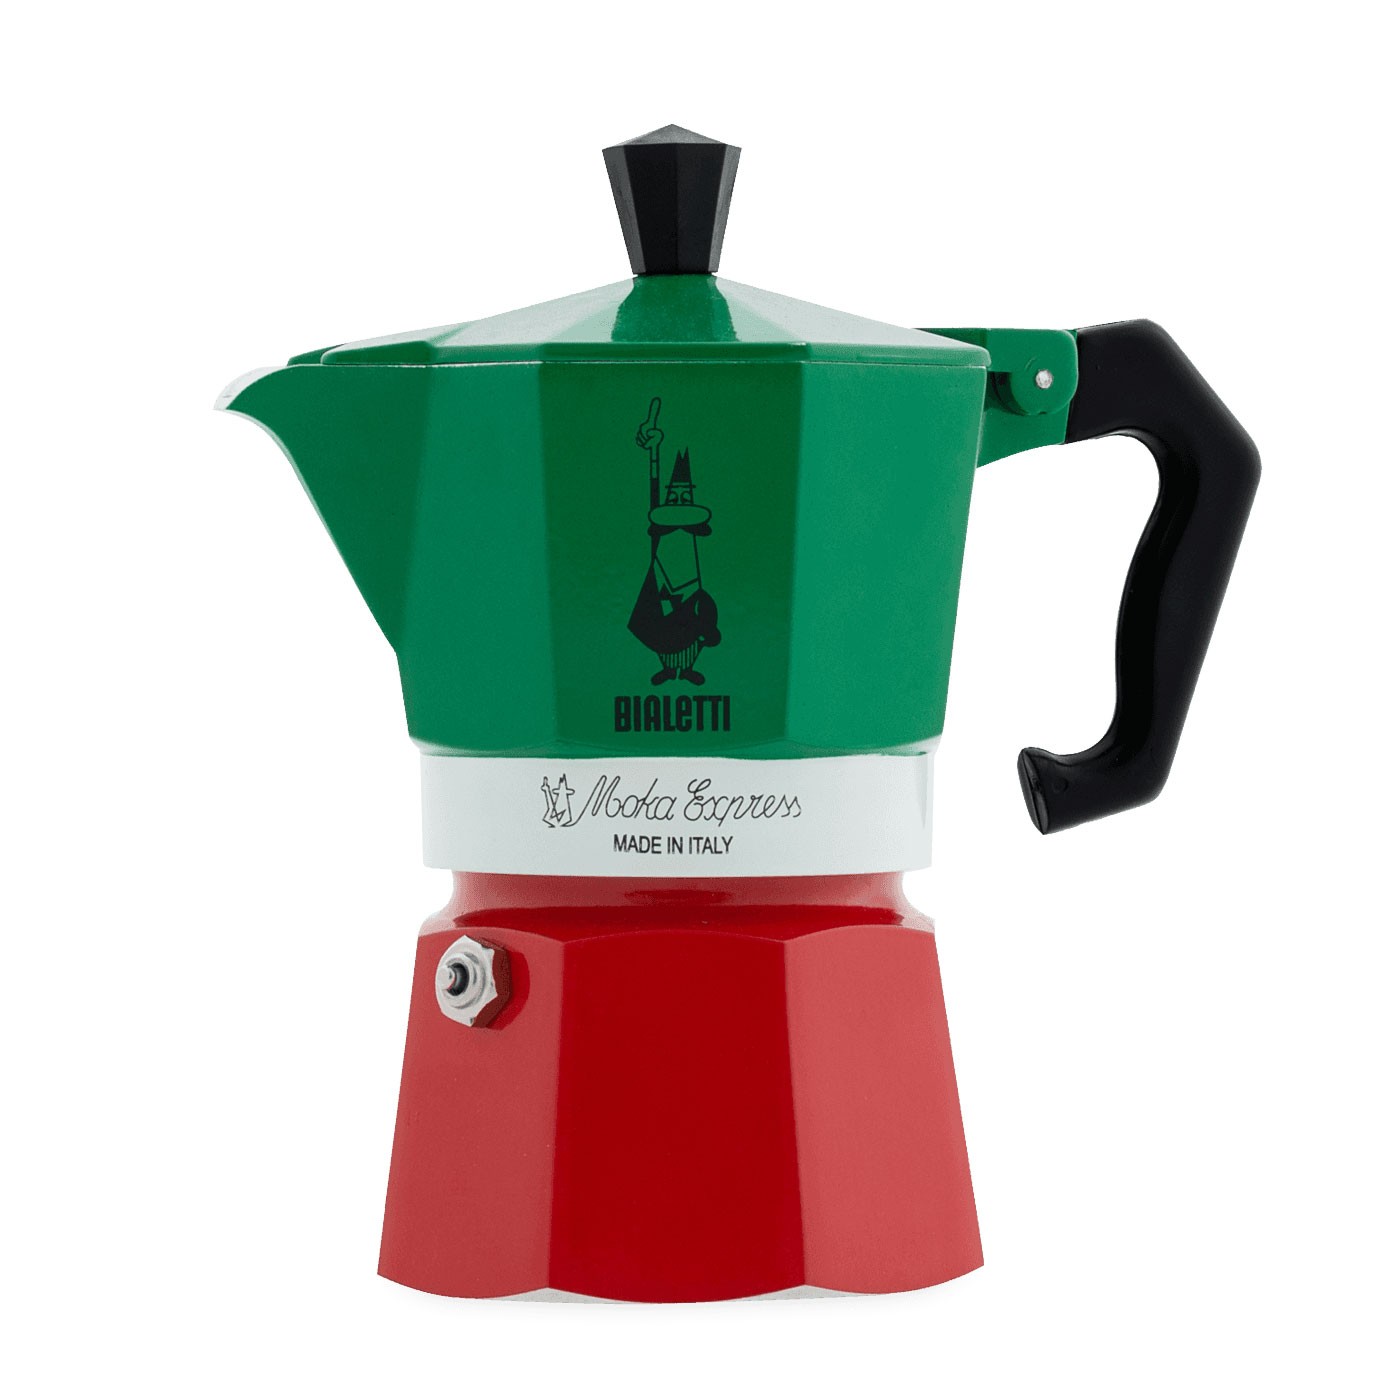 Tricolore Moka Espresso - 3 Cups